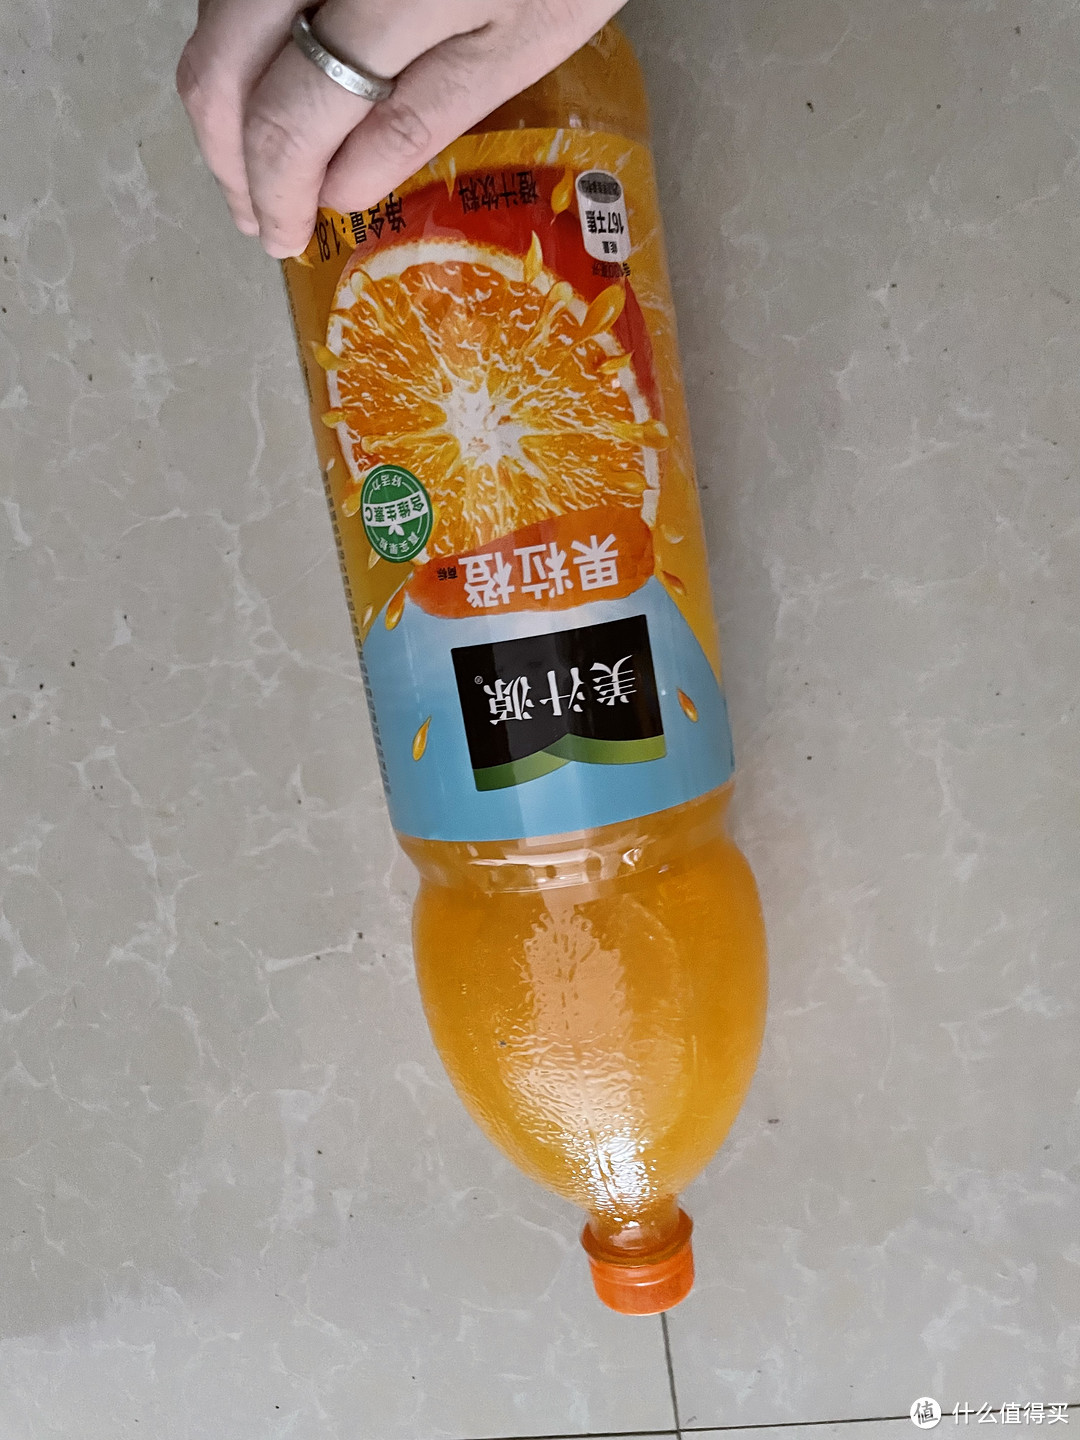 果粒橙，让你的味蕾尽情享受!" ——美汁源果粒橙，口感醇厚，让你的味蕾尽情享受！